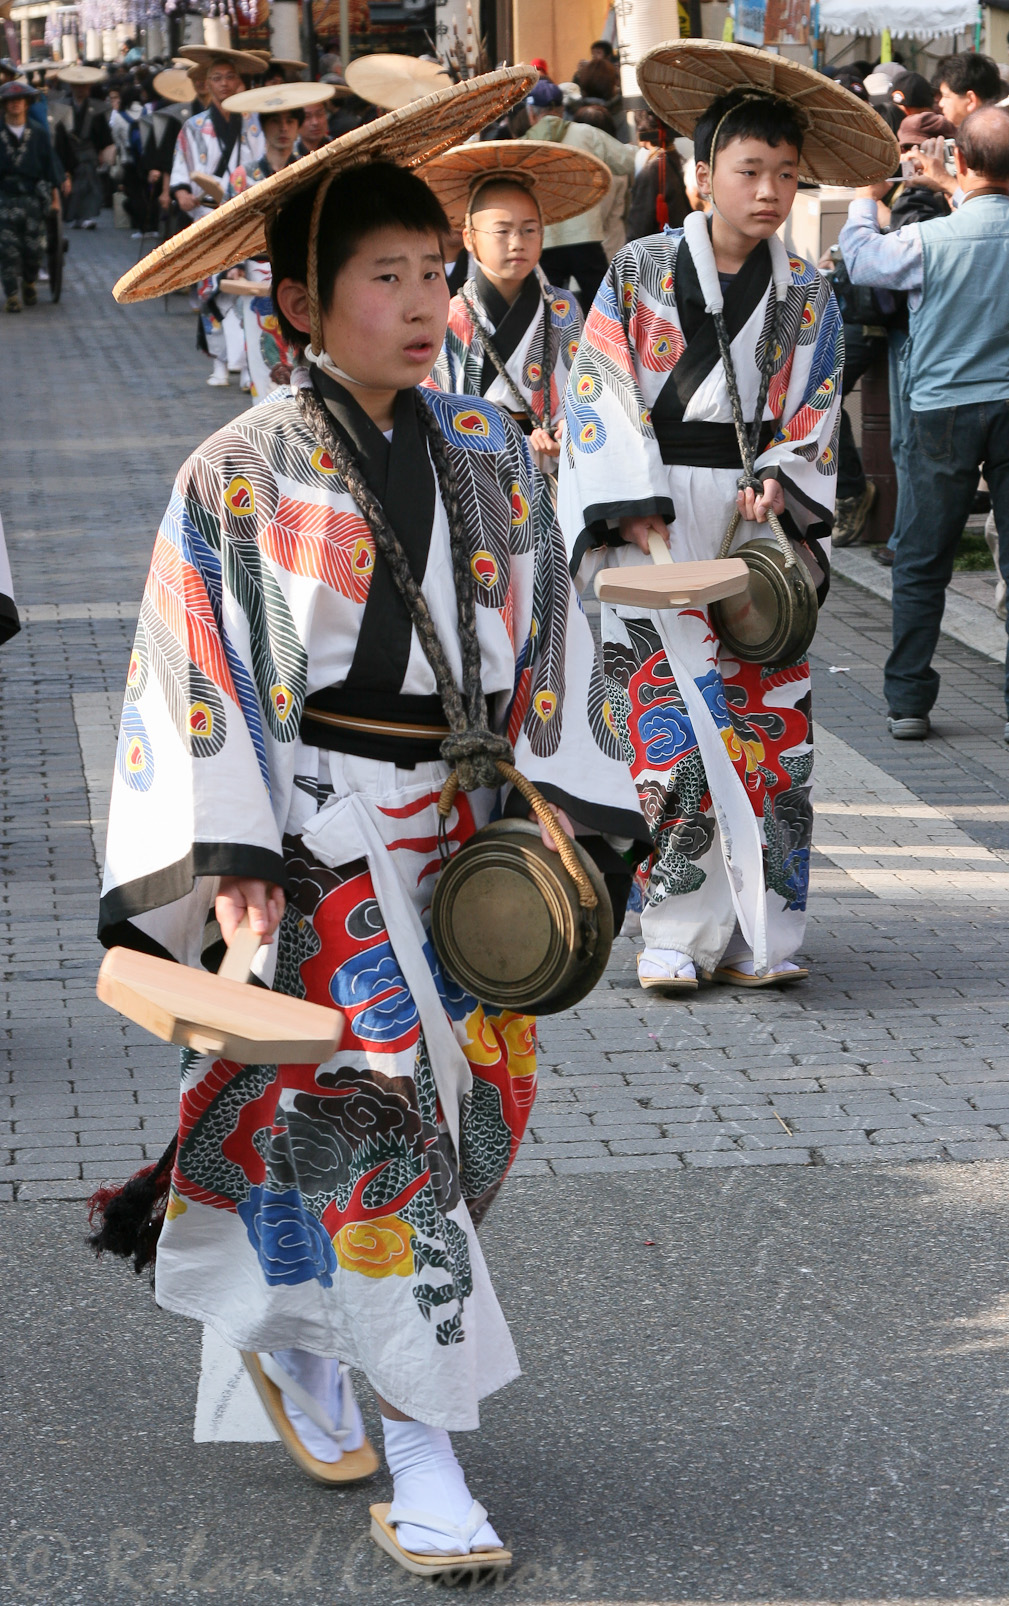 Défilé de gardes habillés en costume traditionnel de la période Edo.